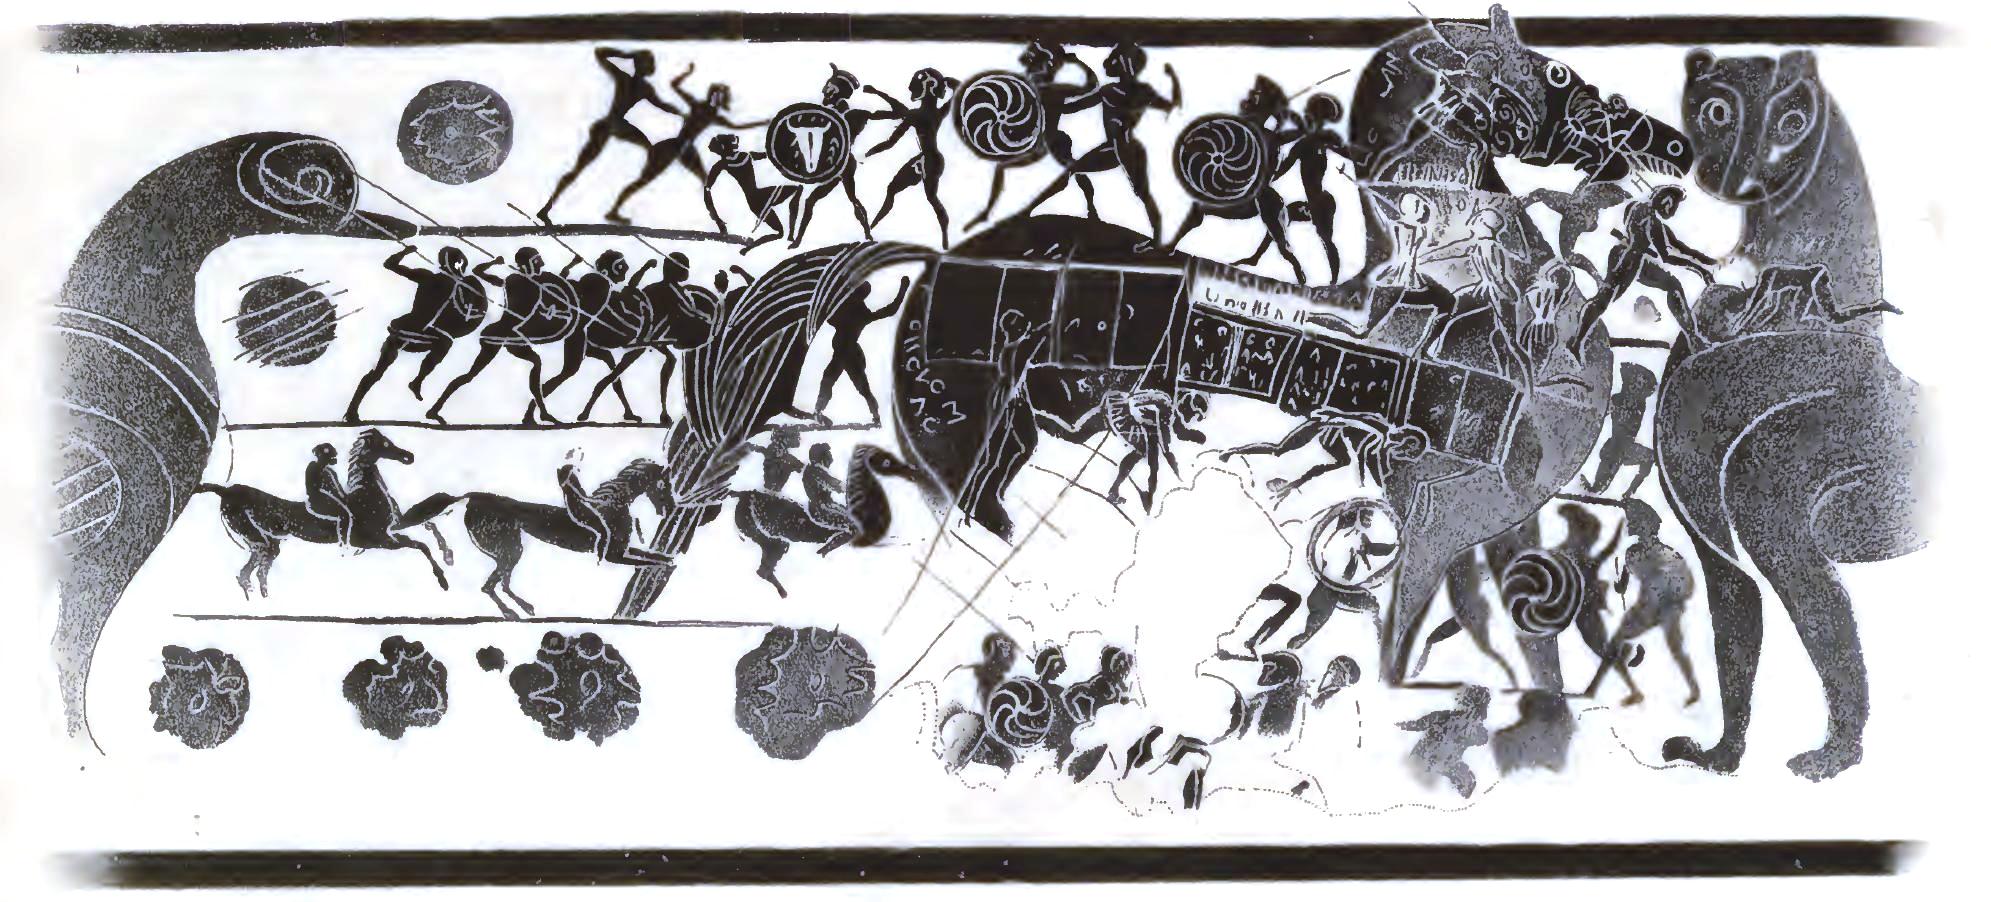 Oldest Trojan Horse Depiction